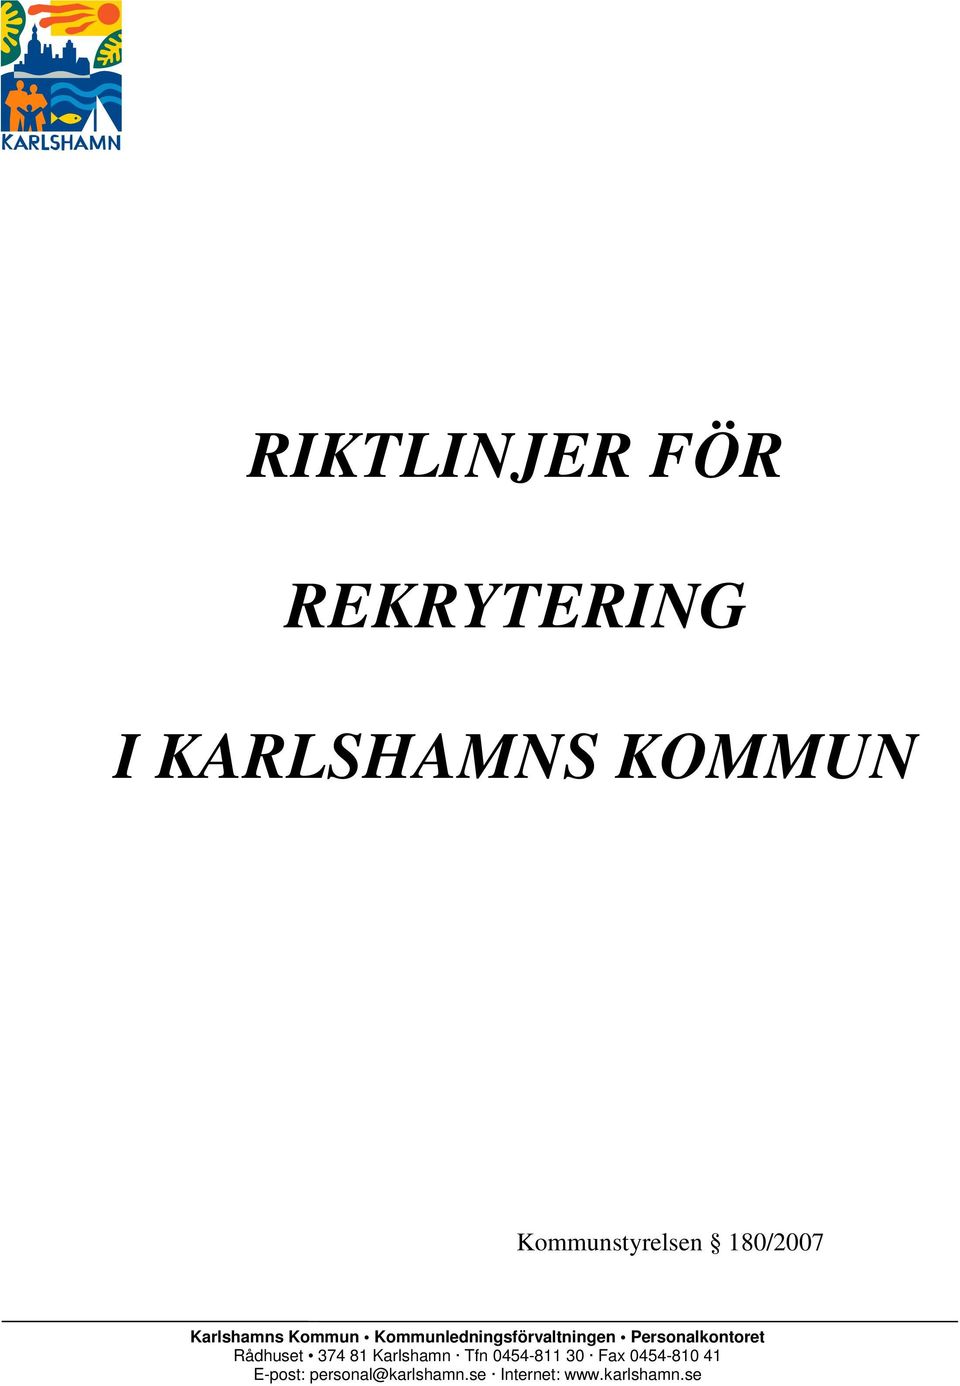 Personalkontoret Rådhuset 374 81 Karlshamn Tfn 0454-811 30 Fax